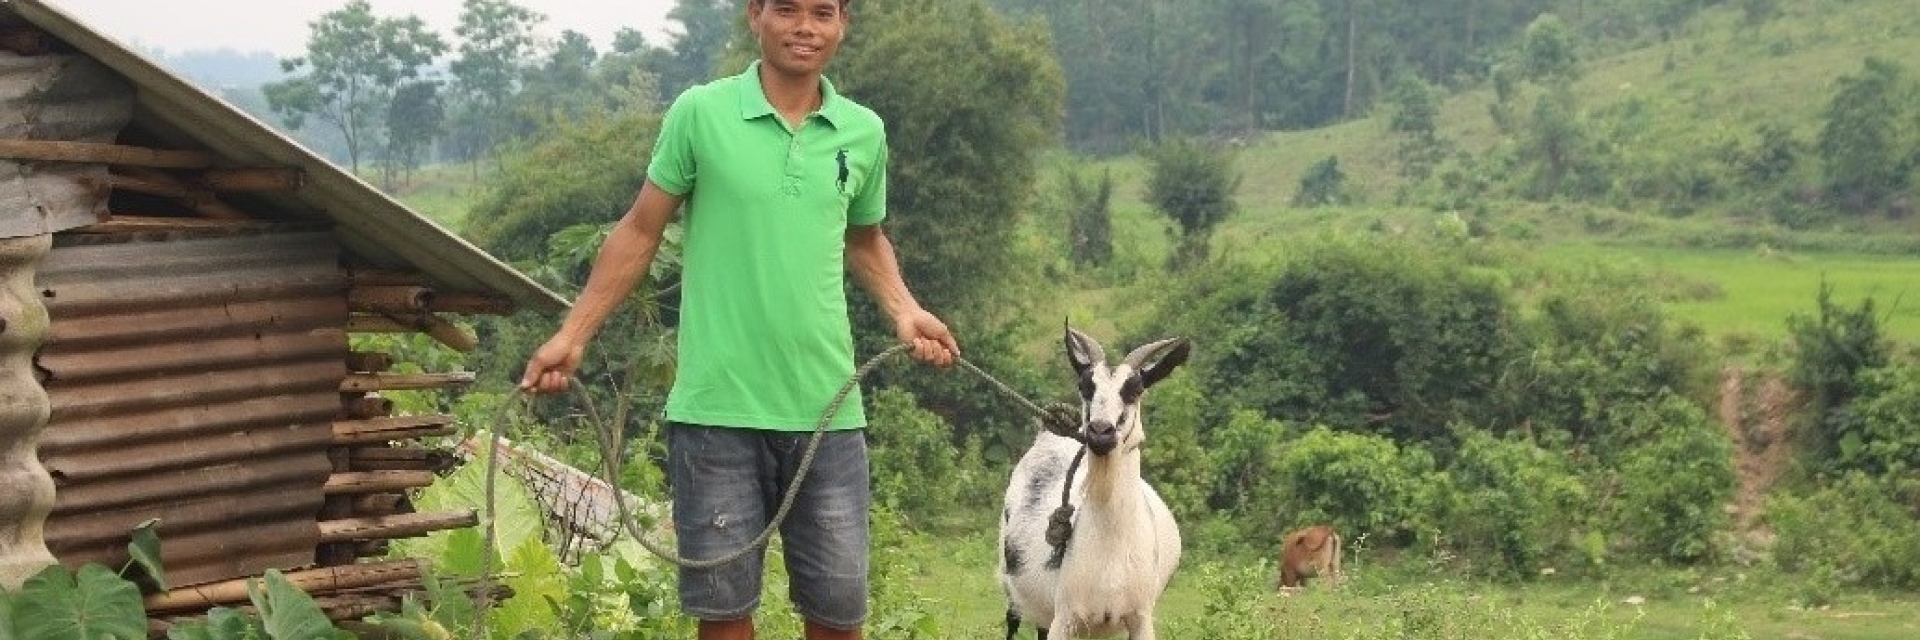 Un homme vietnamien avec sa chèvre